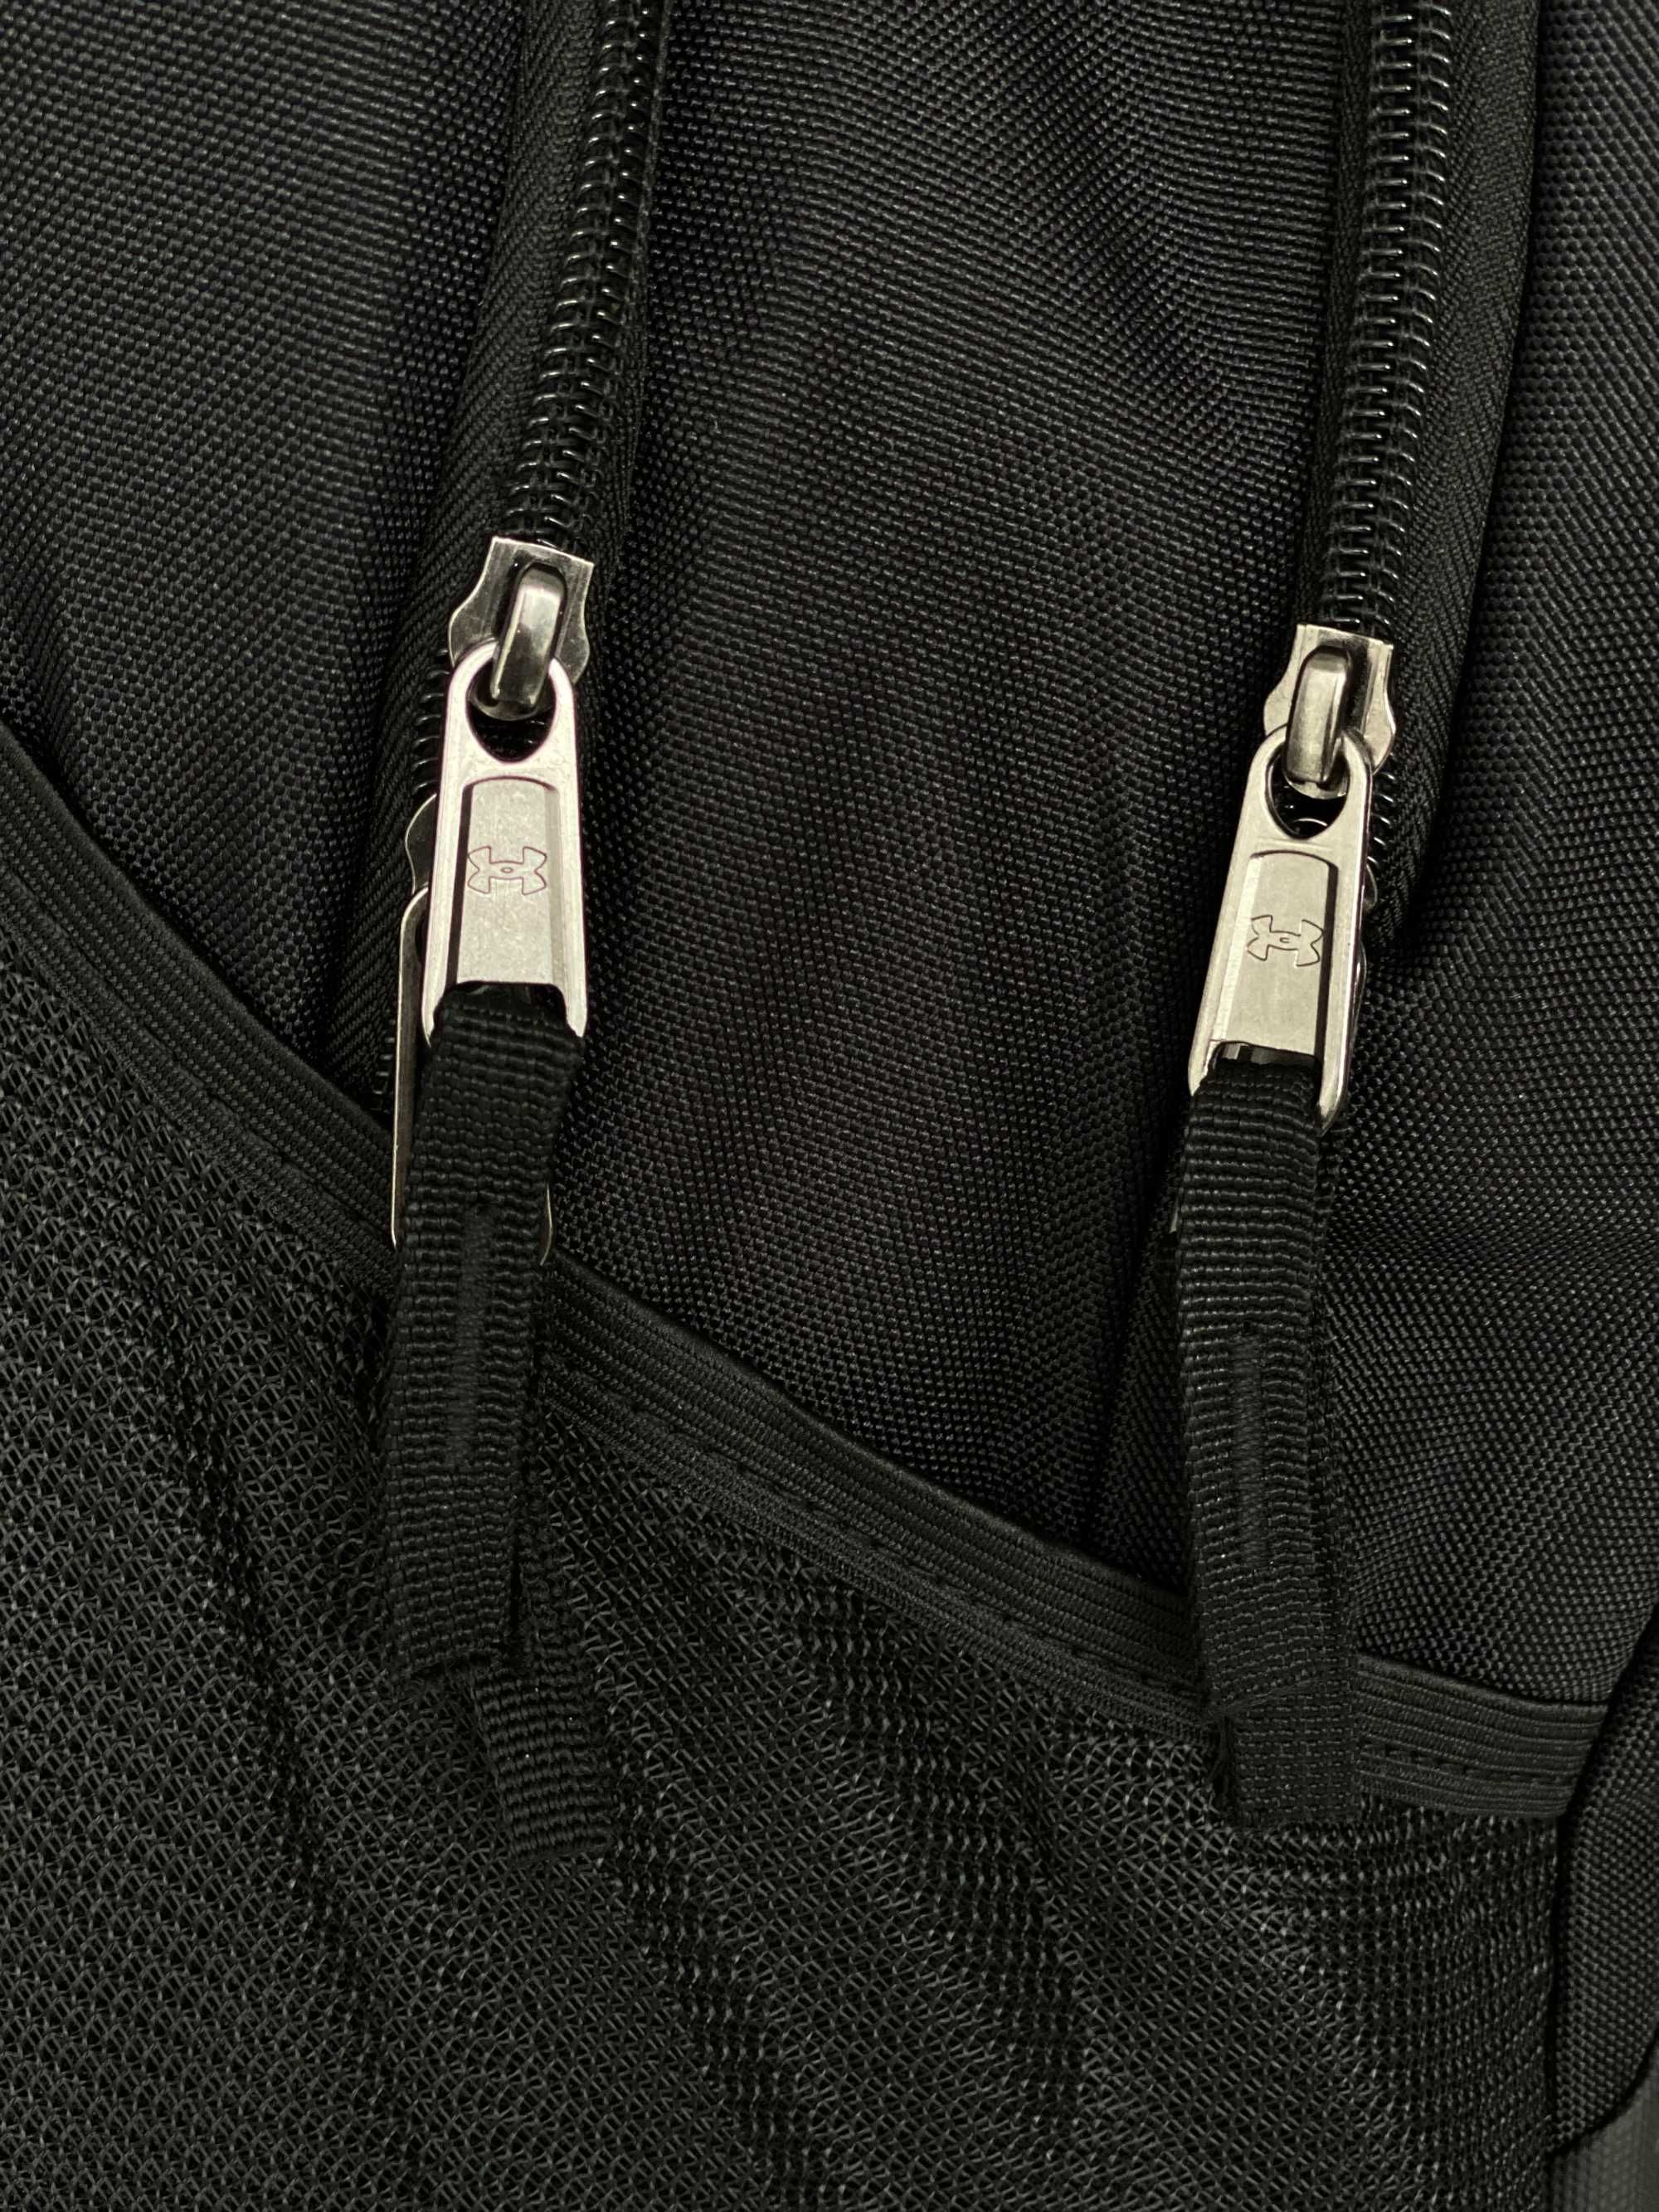 Рюкзак UNDER ARMOUR /Спортивный рюкзак/Городской Рюкзак